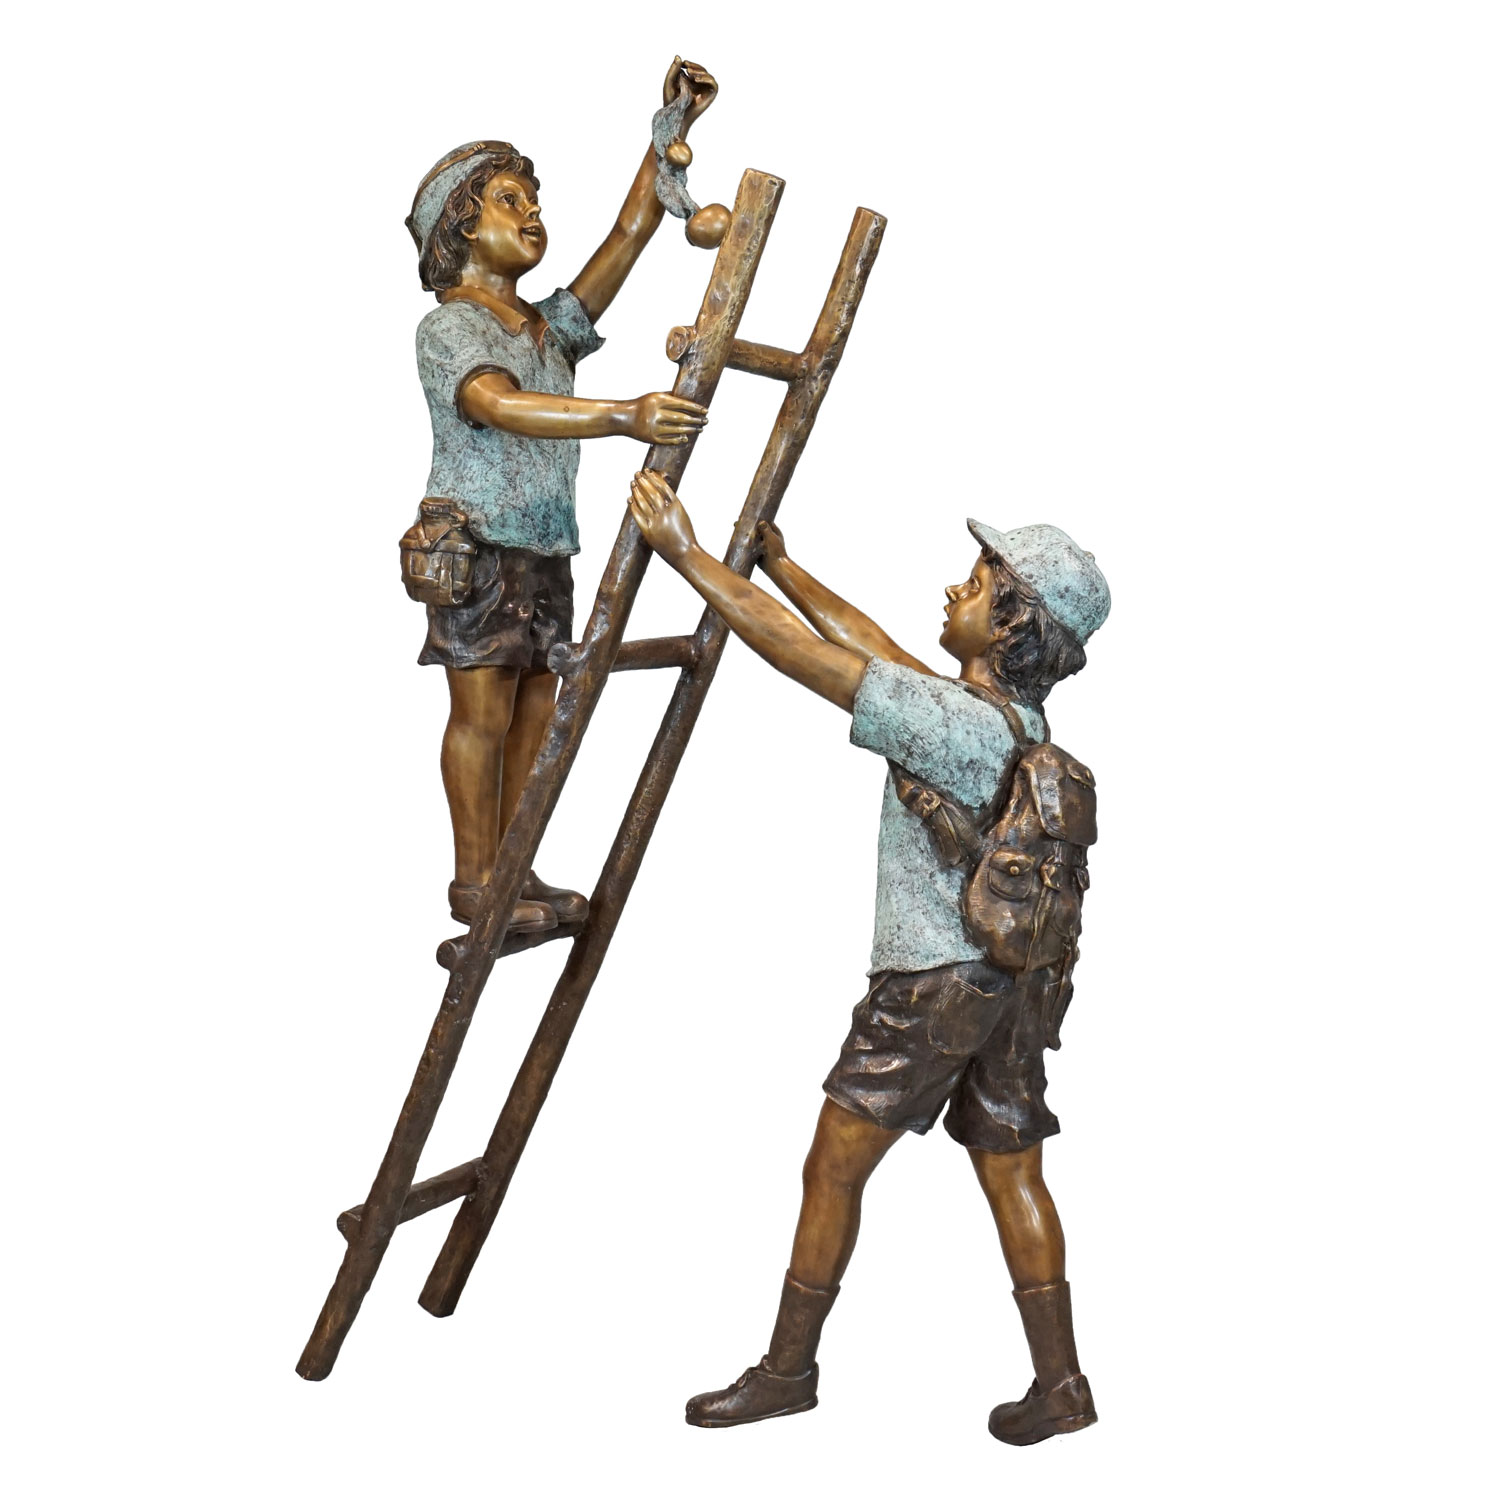 Boy and Girl Climbing Ladder - IronGate Garden Elements